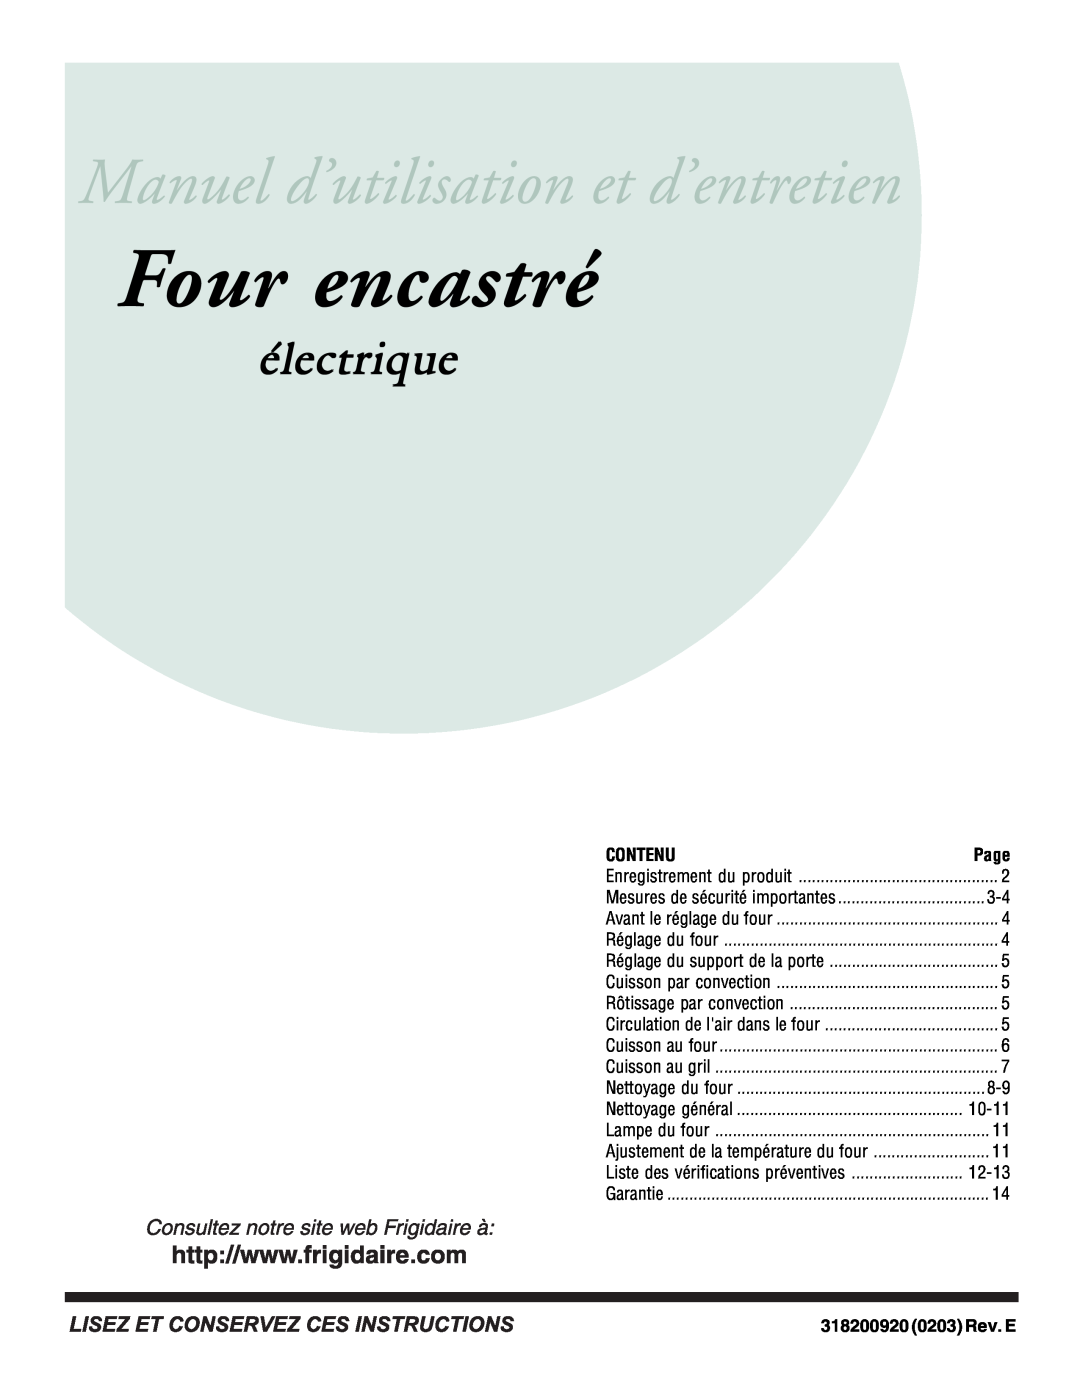 Frigidaire important safety instructions Four encastré, électrique, Contenu, 318200920 0203 Rev. E 